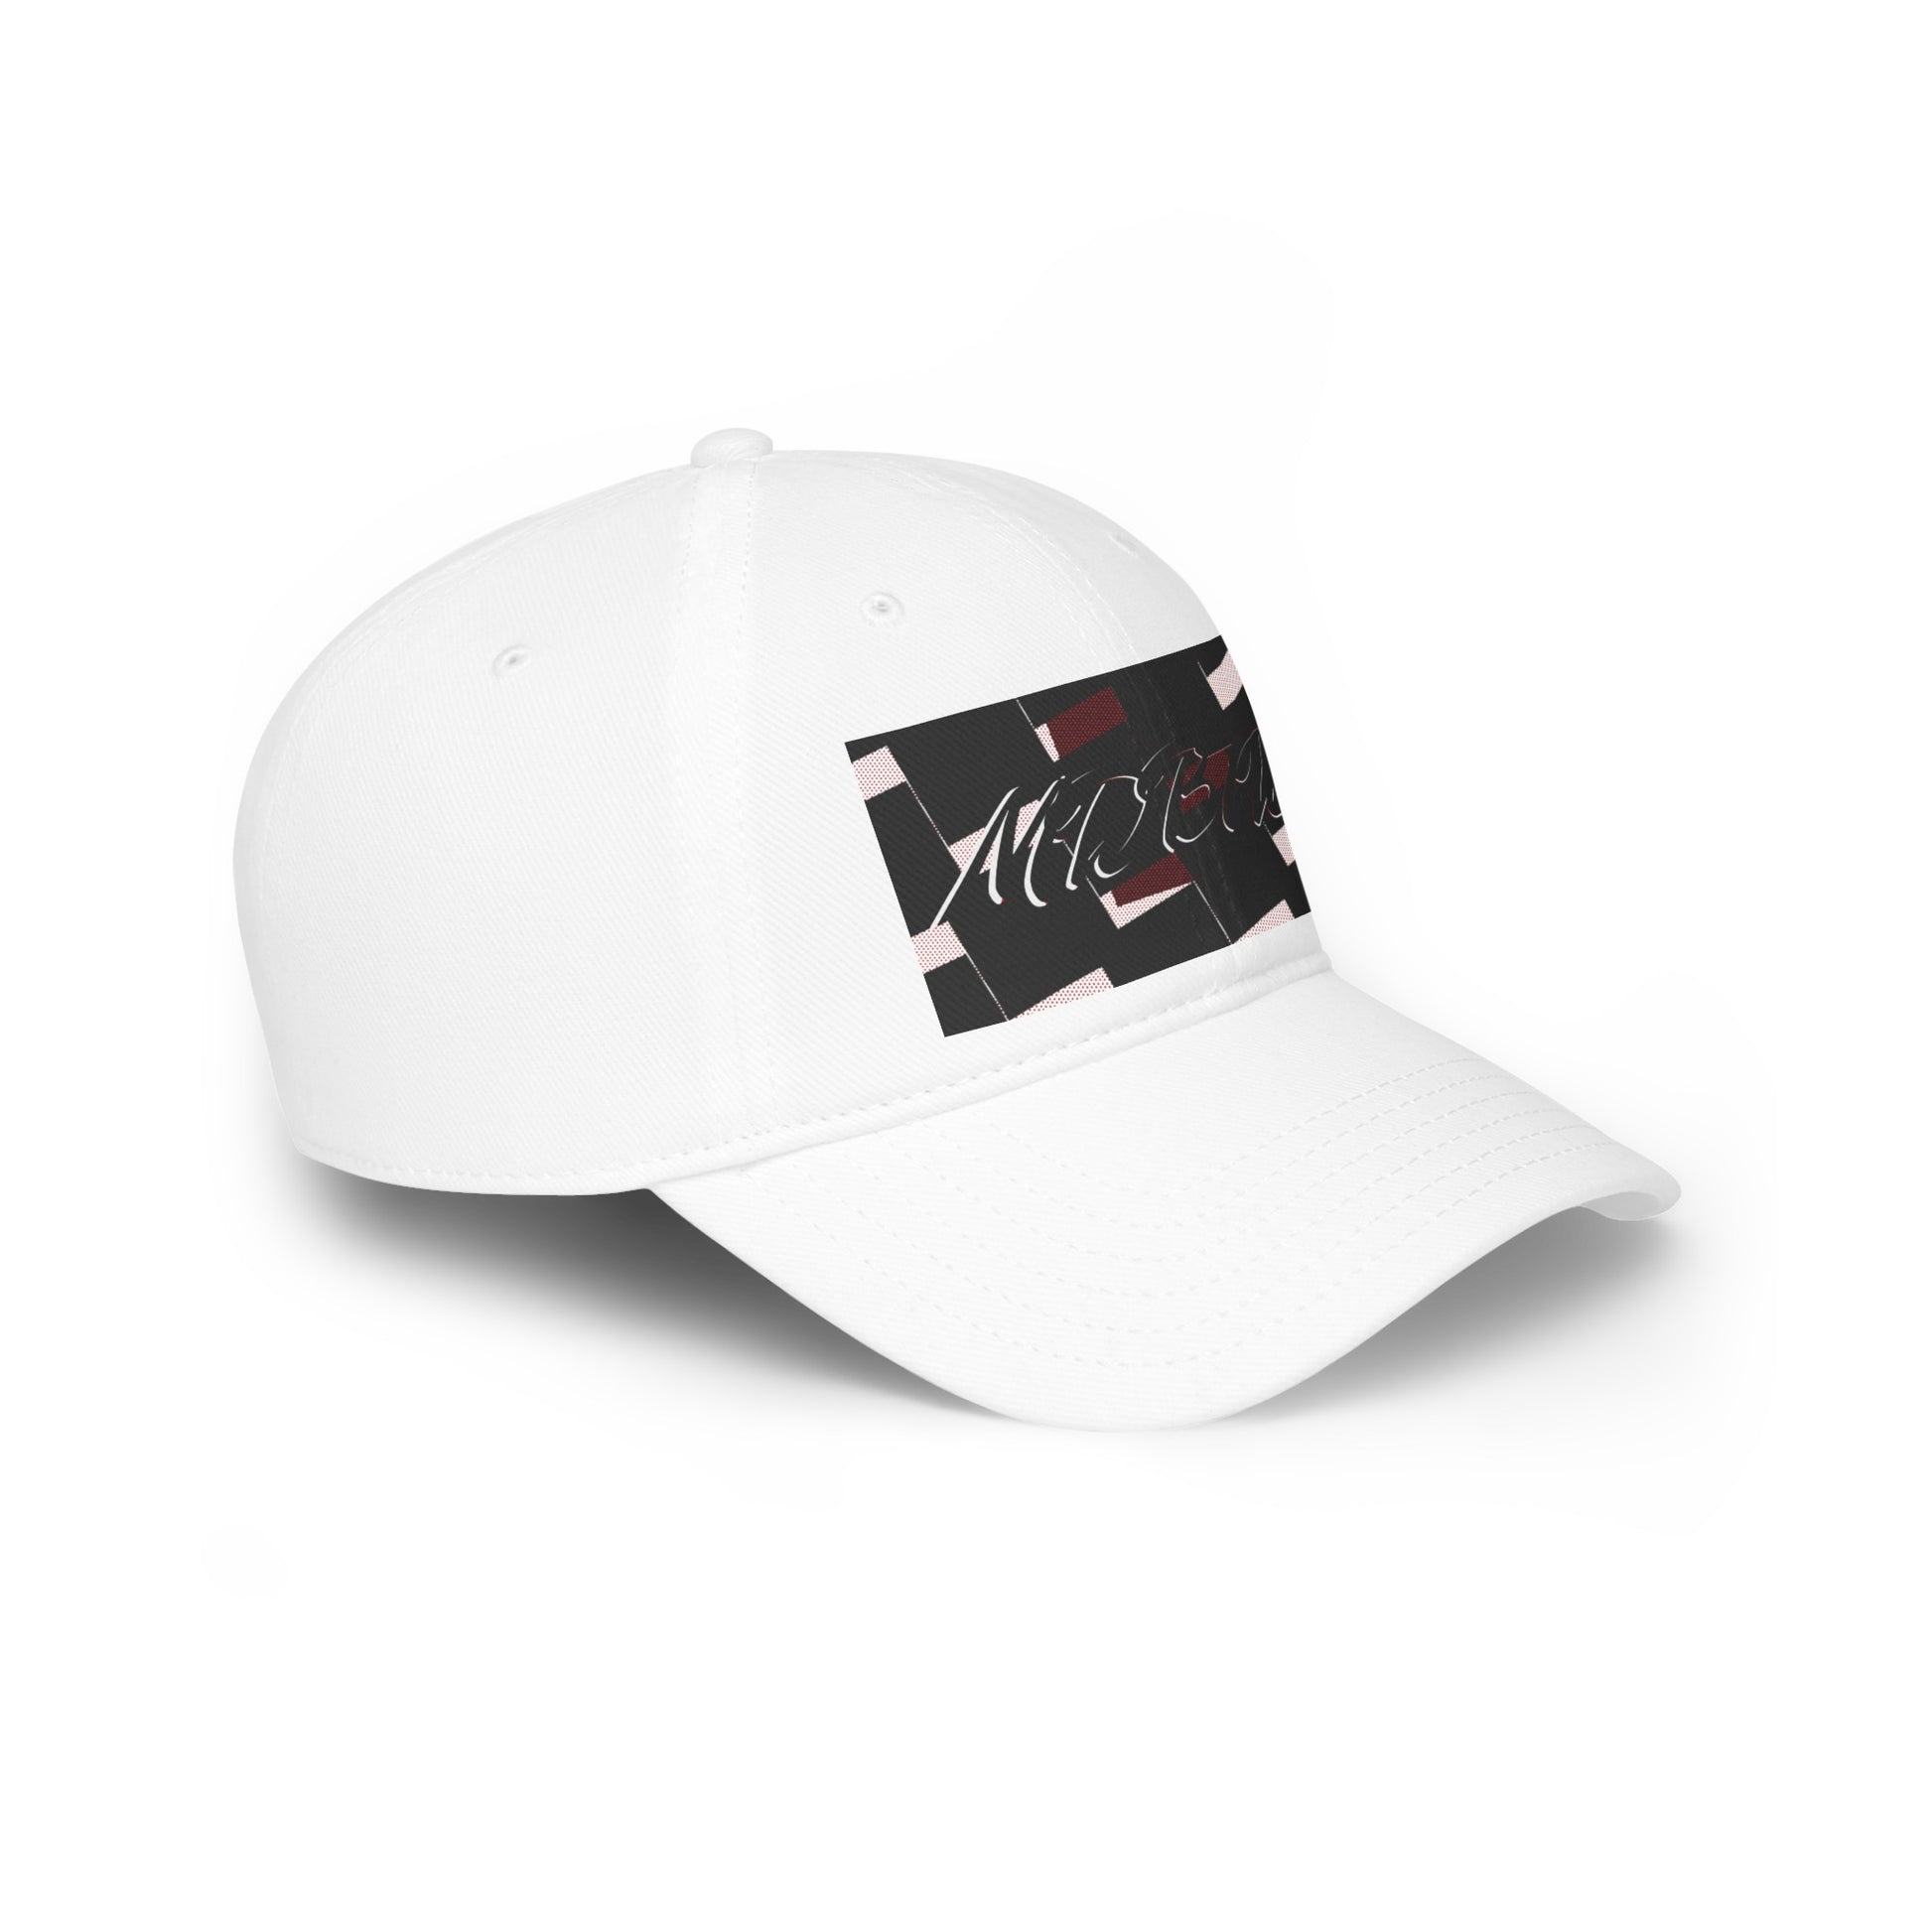 MDBTDJ#BRSQC - Low Profile Baseball Cap Tattooed Dj's Limited Edition, Hats, Tattooed Djs Shop